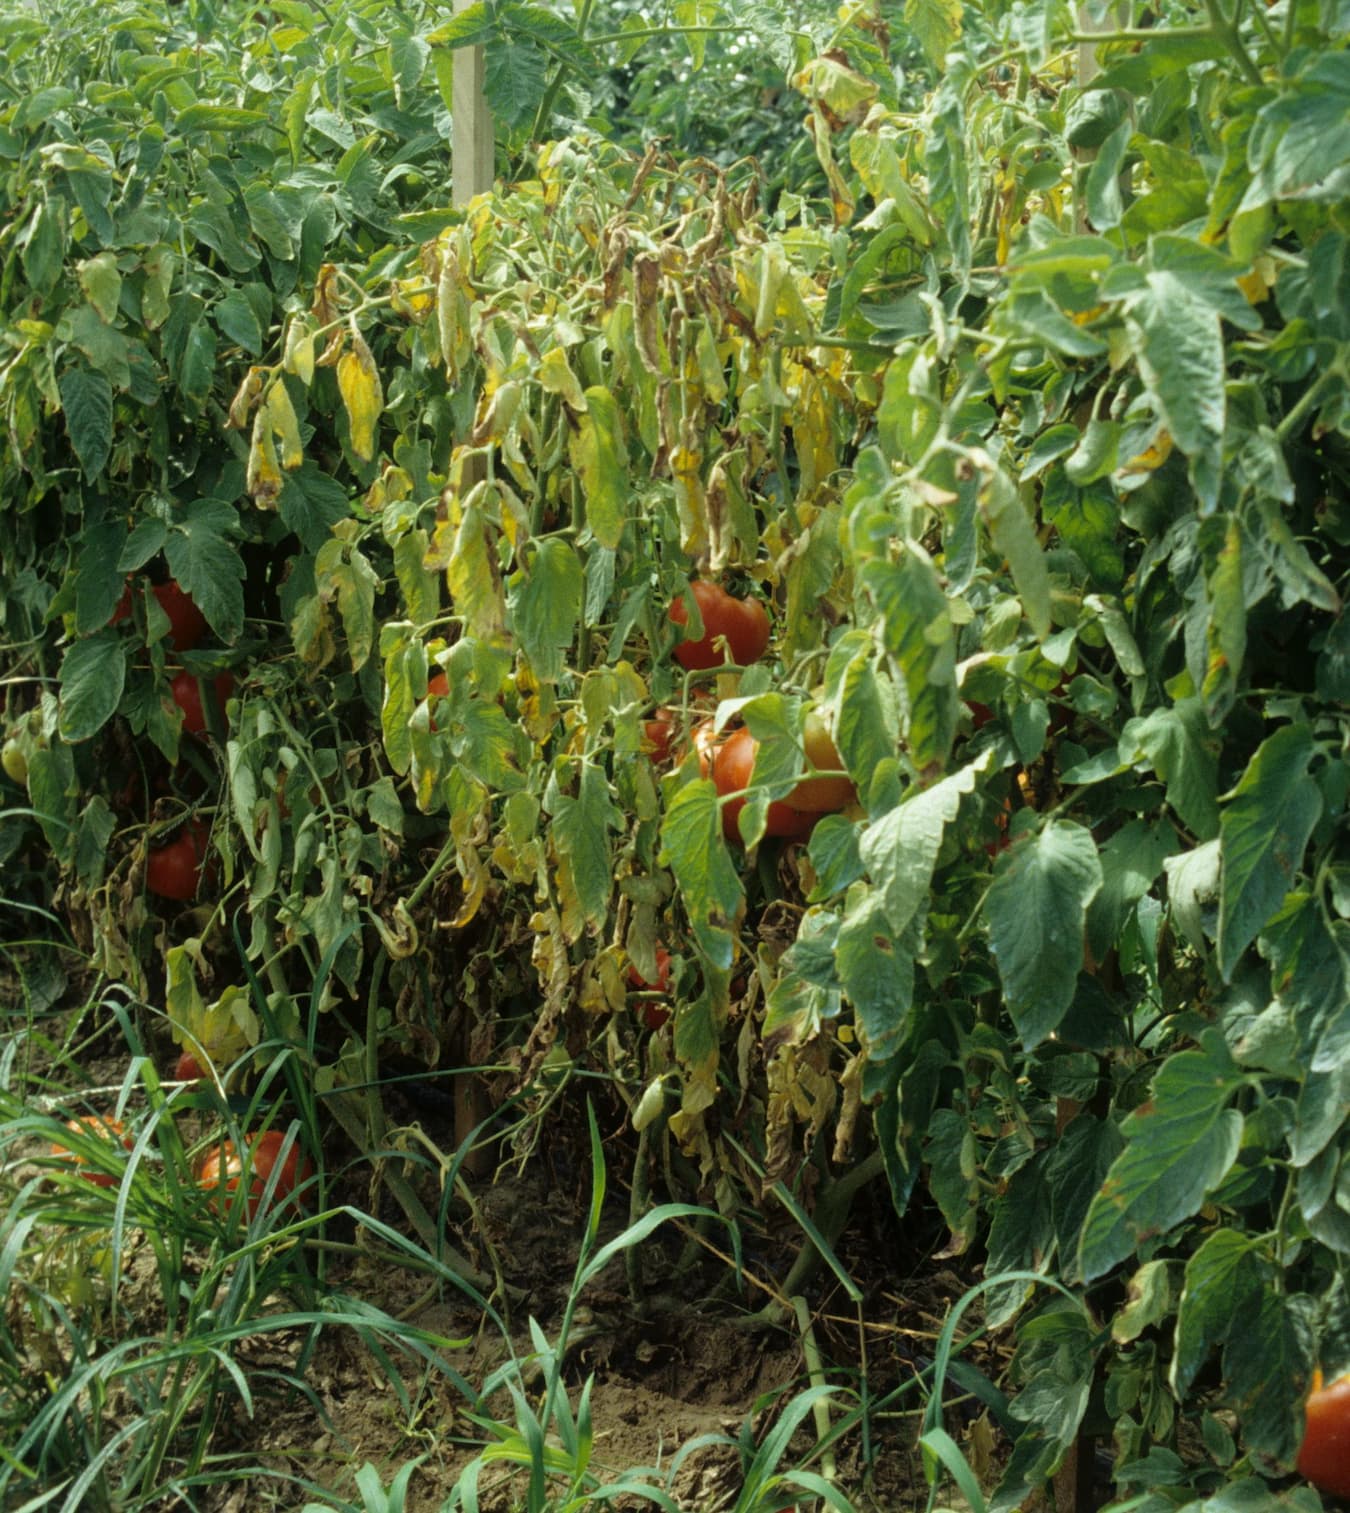 تاریخچه بیماری پژمردگی فوزاریومی گوجه فرنگی، اهمیت بیماری و انتشار آن